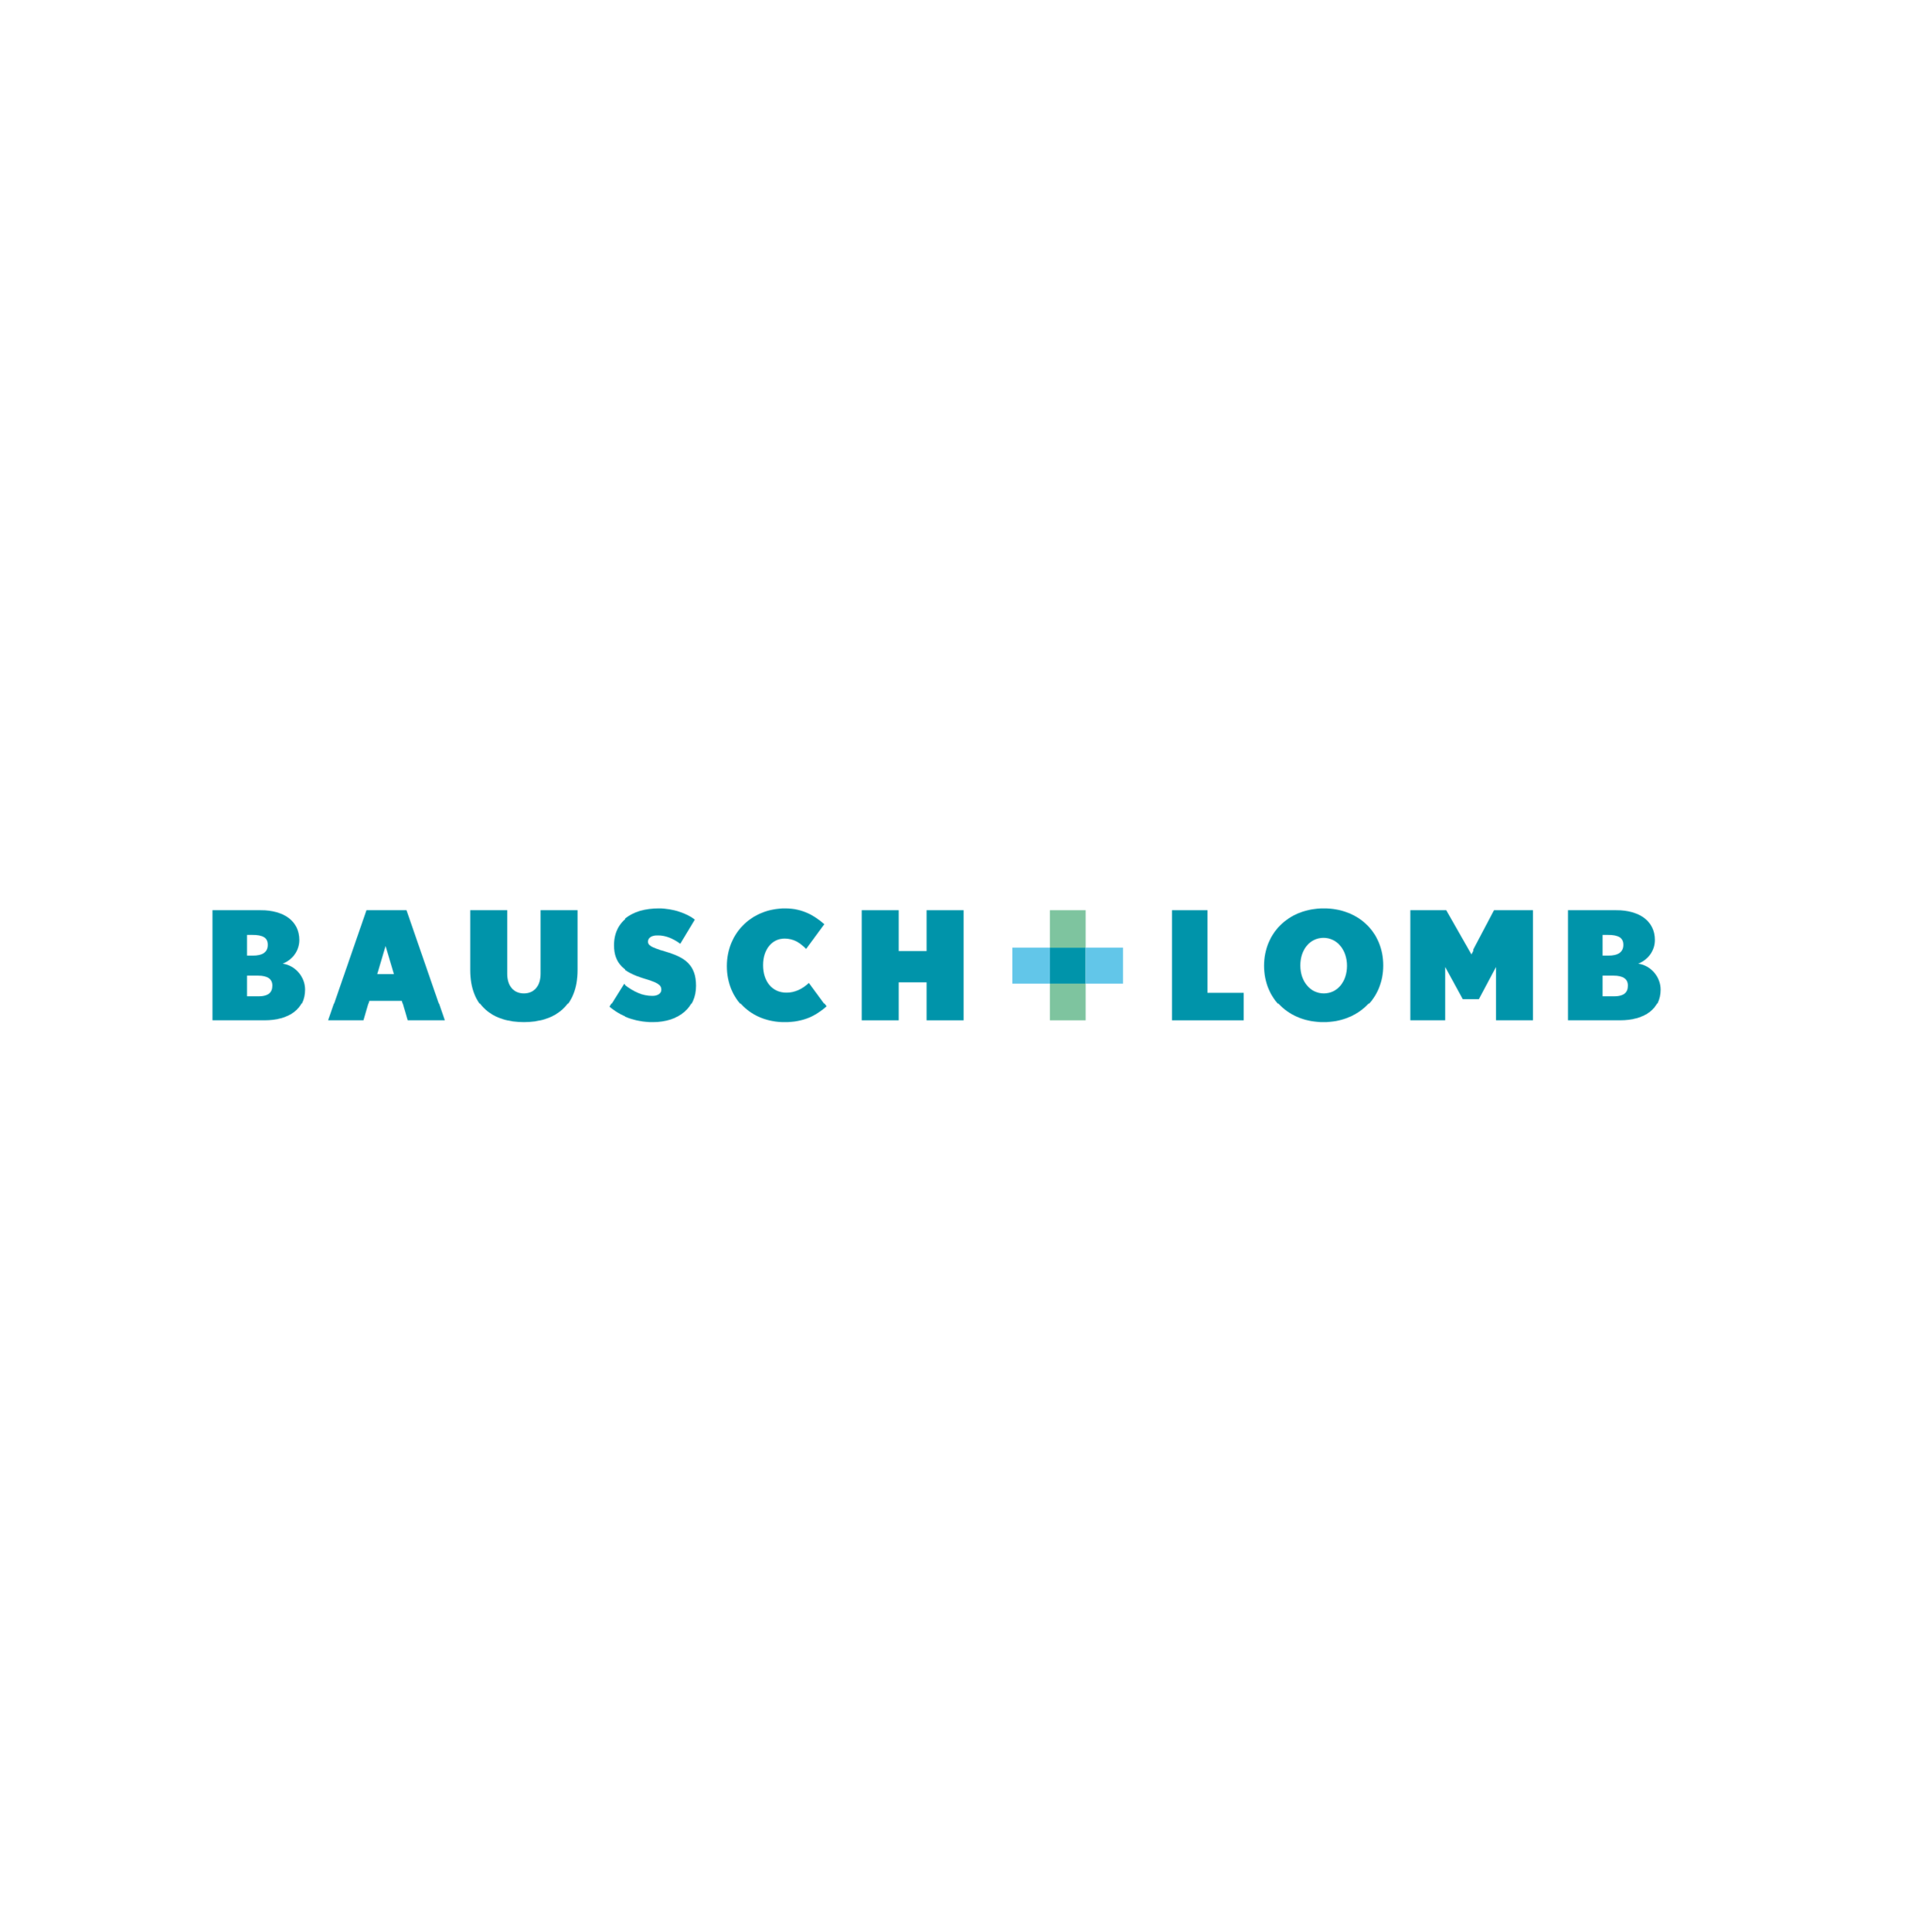 Bausch und Lomb Logo.png